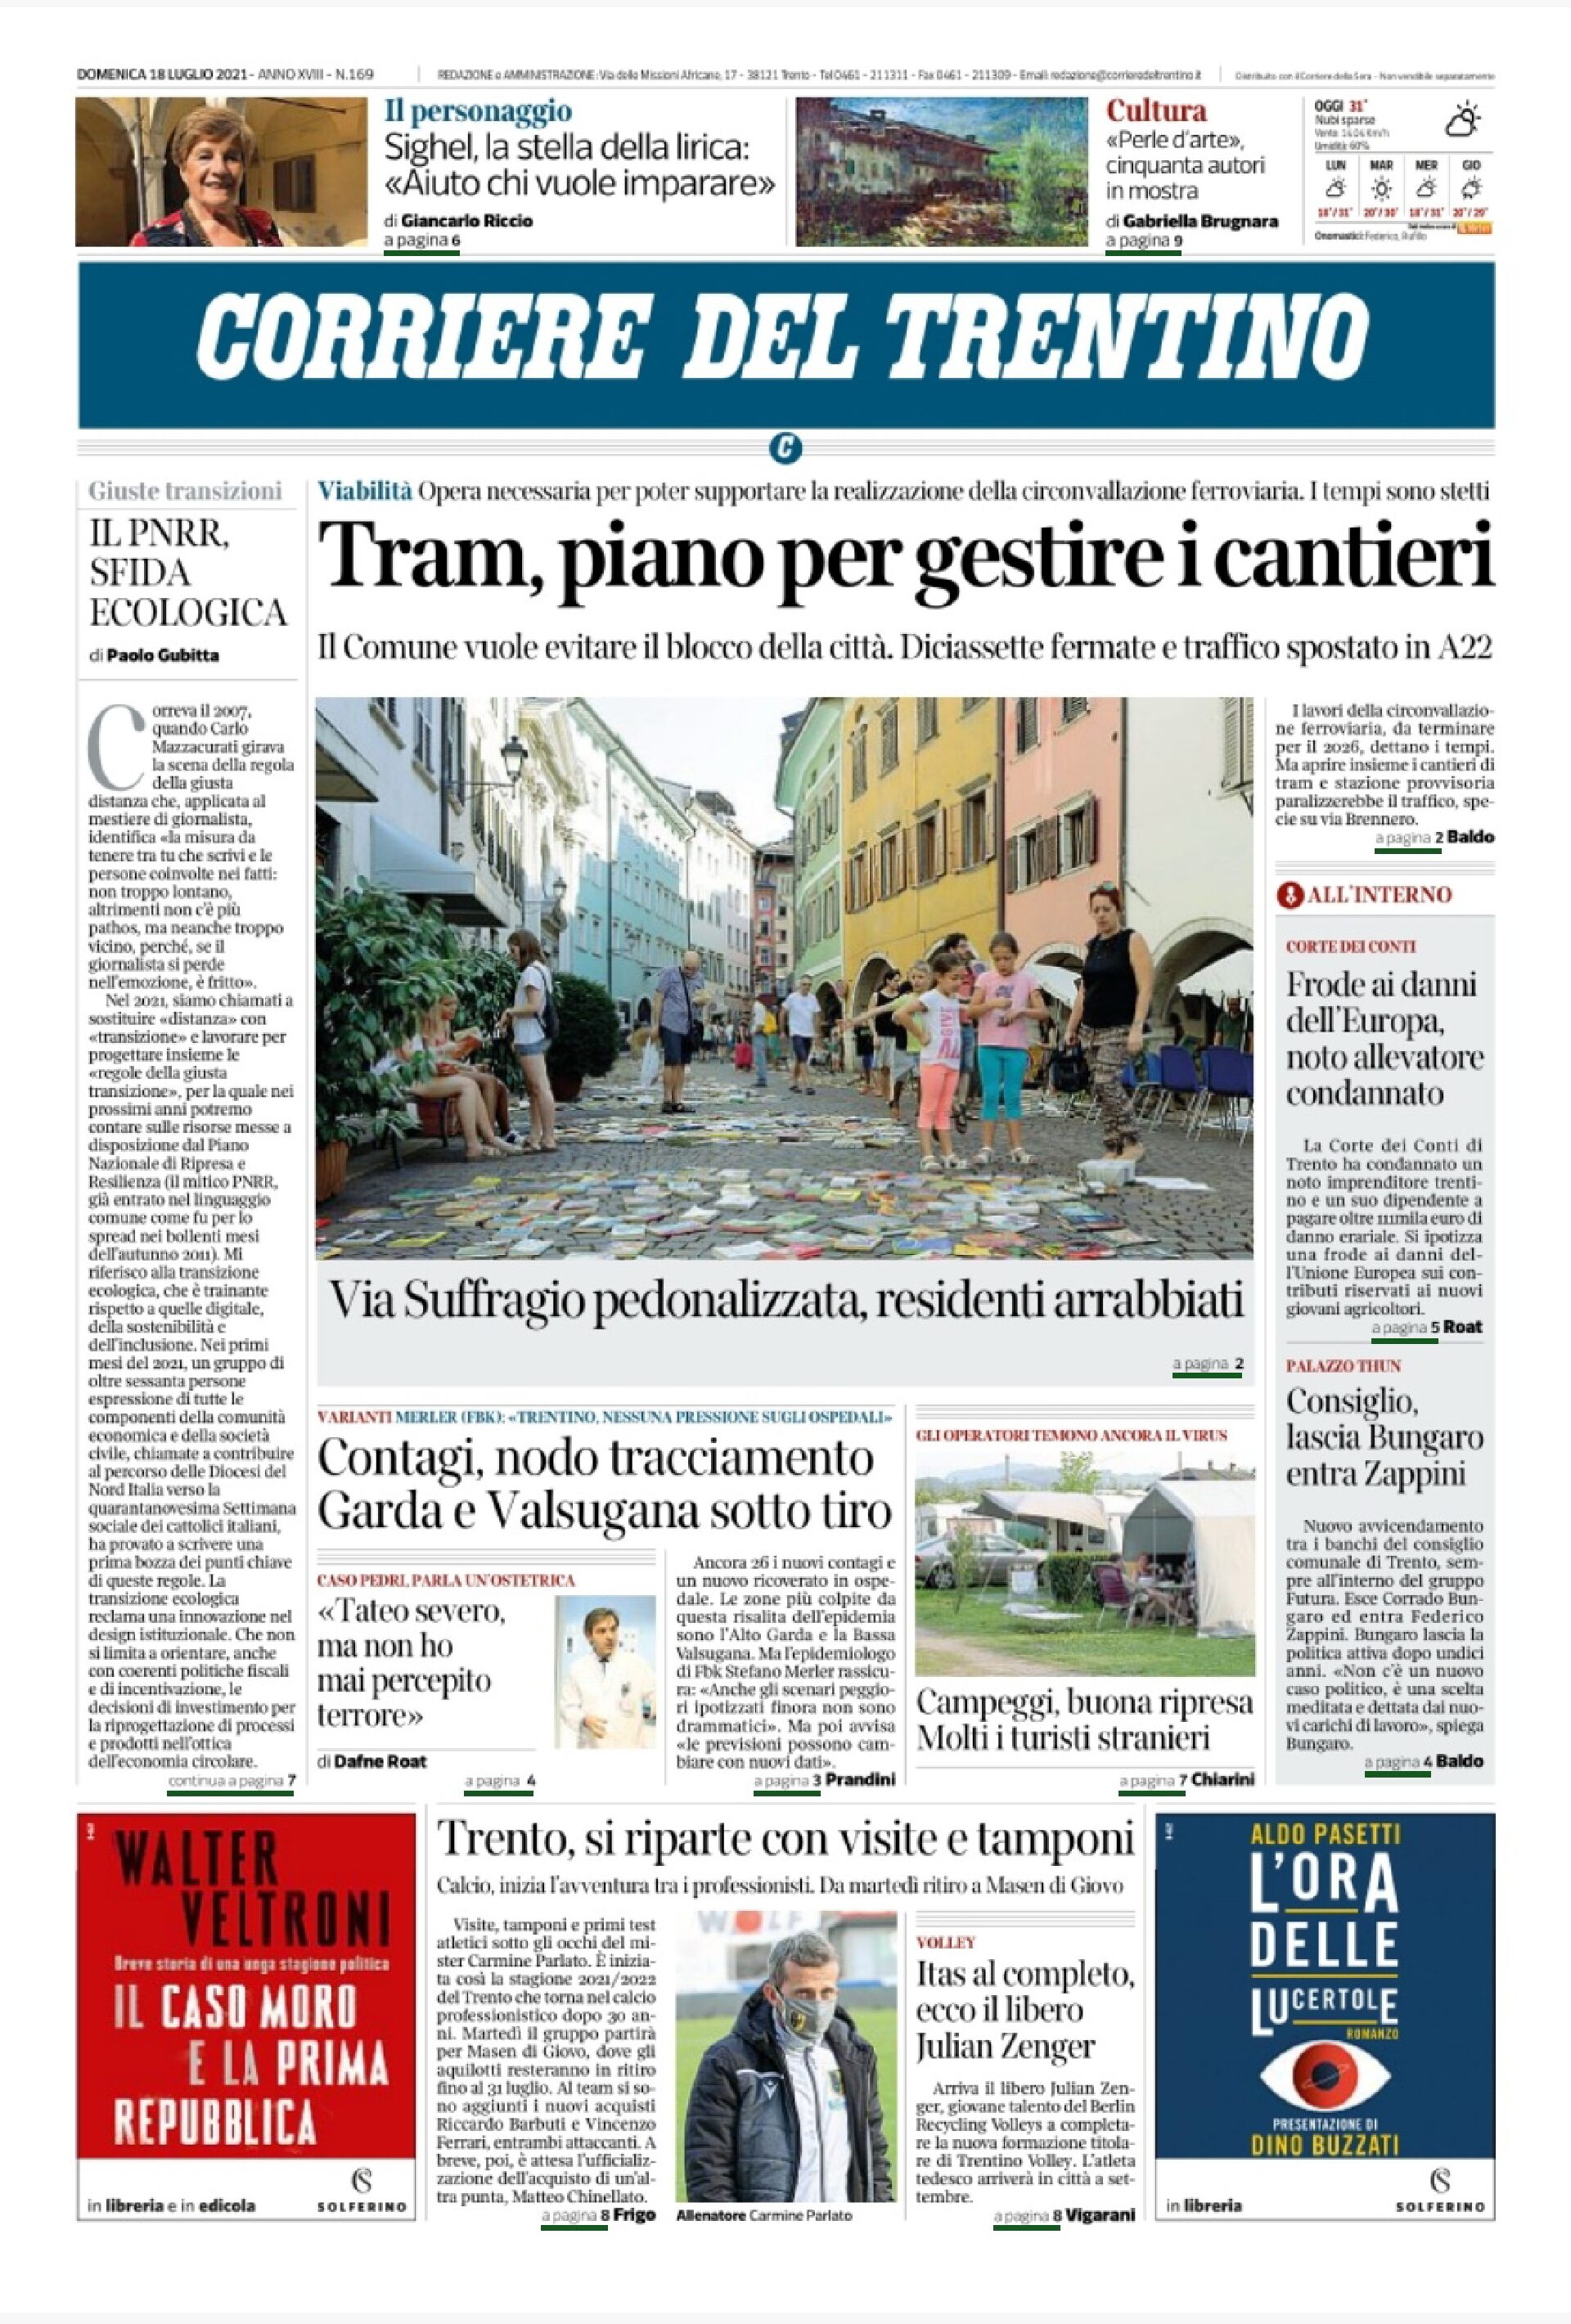 Trento, tram: piano per gestire i cantieri